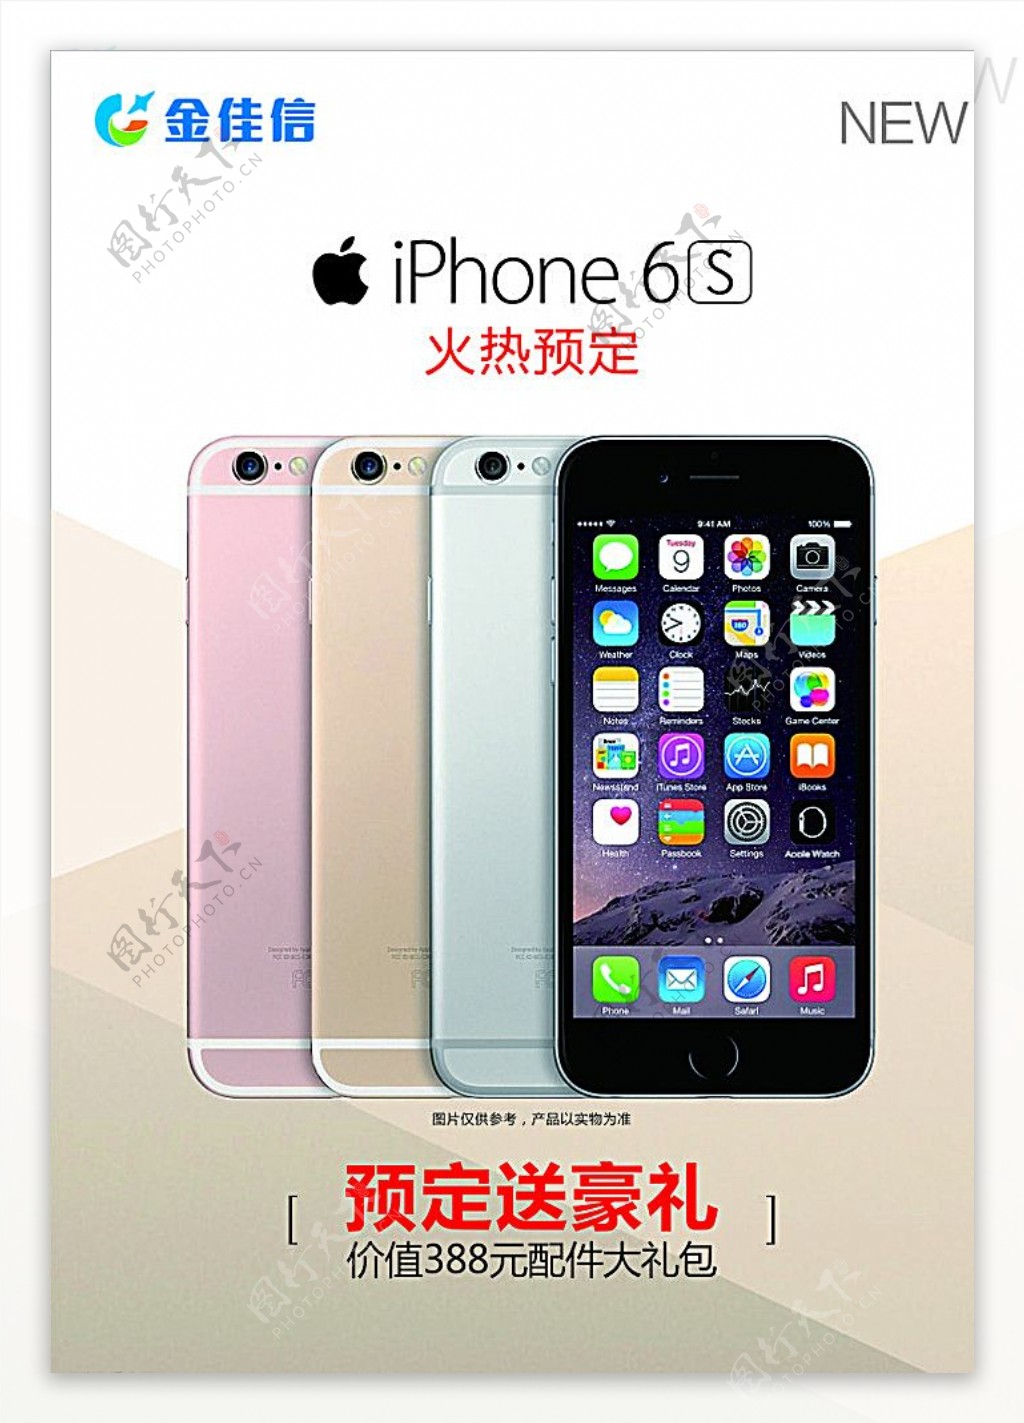 iphone6s预售图片